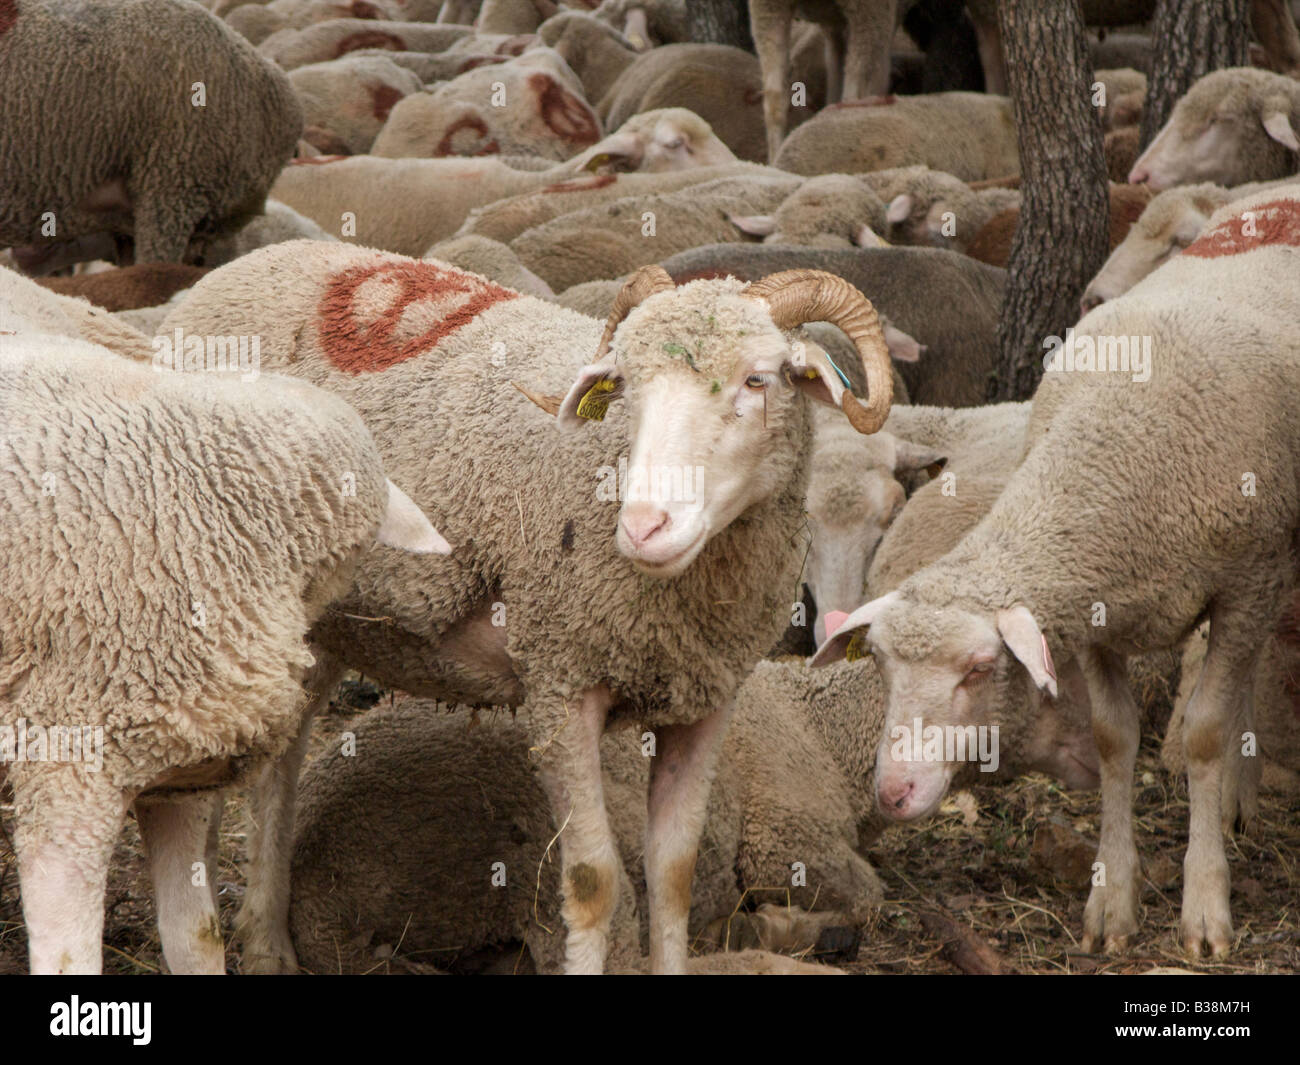 Beaucoup de repos et des moutons paissant dans la Forêt, Montauroux, Var, France Banque D'Images